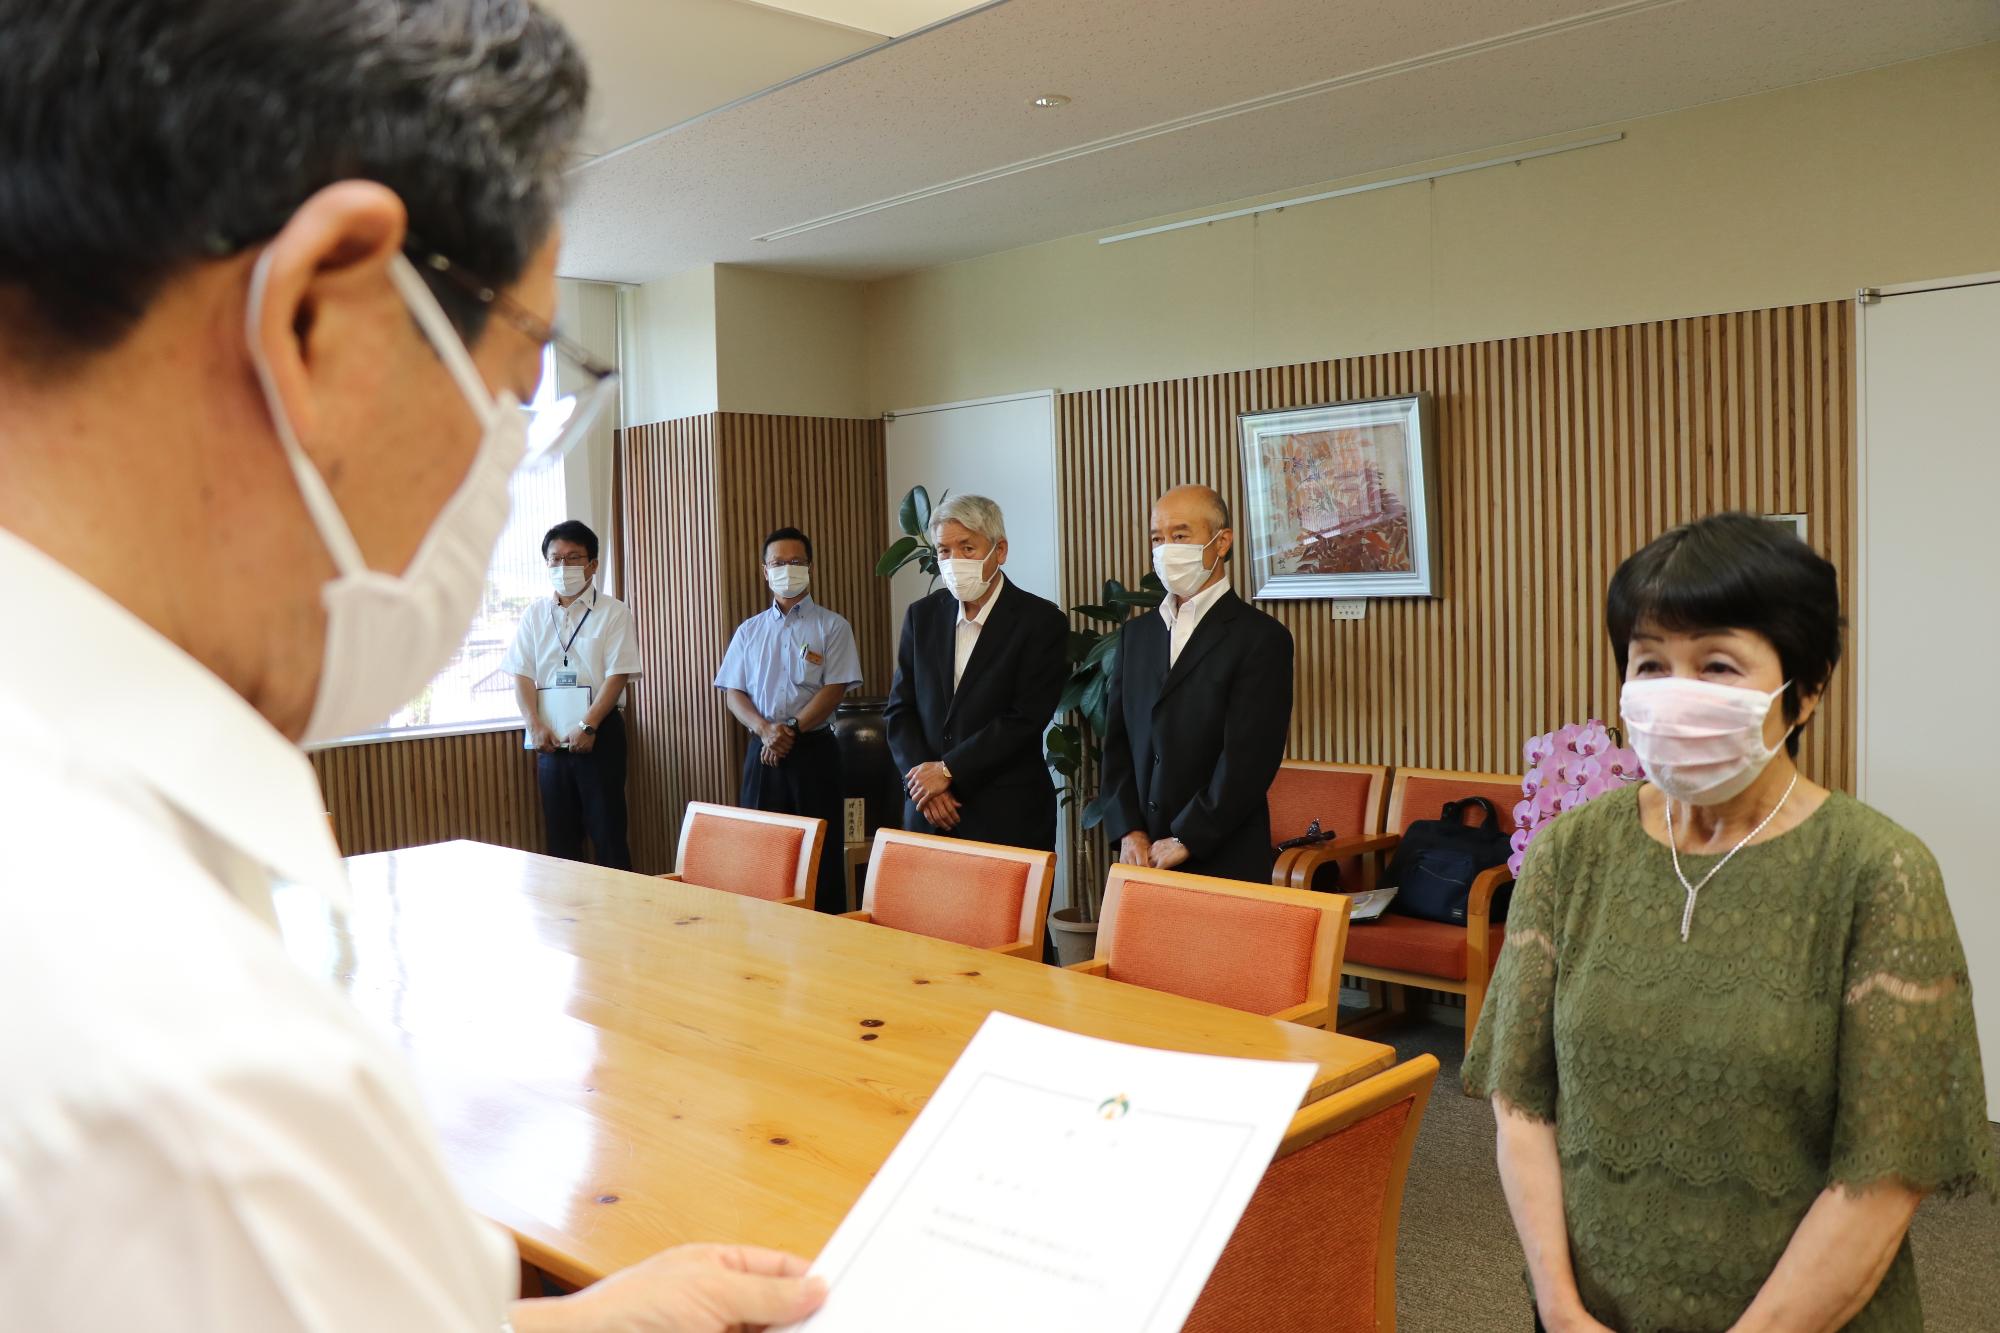 鳥居氏が市長から固定資産評価委員の任命を受けている写真